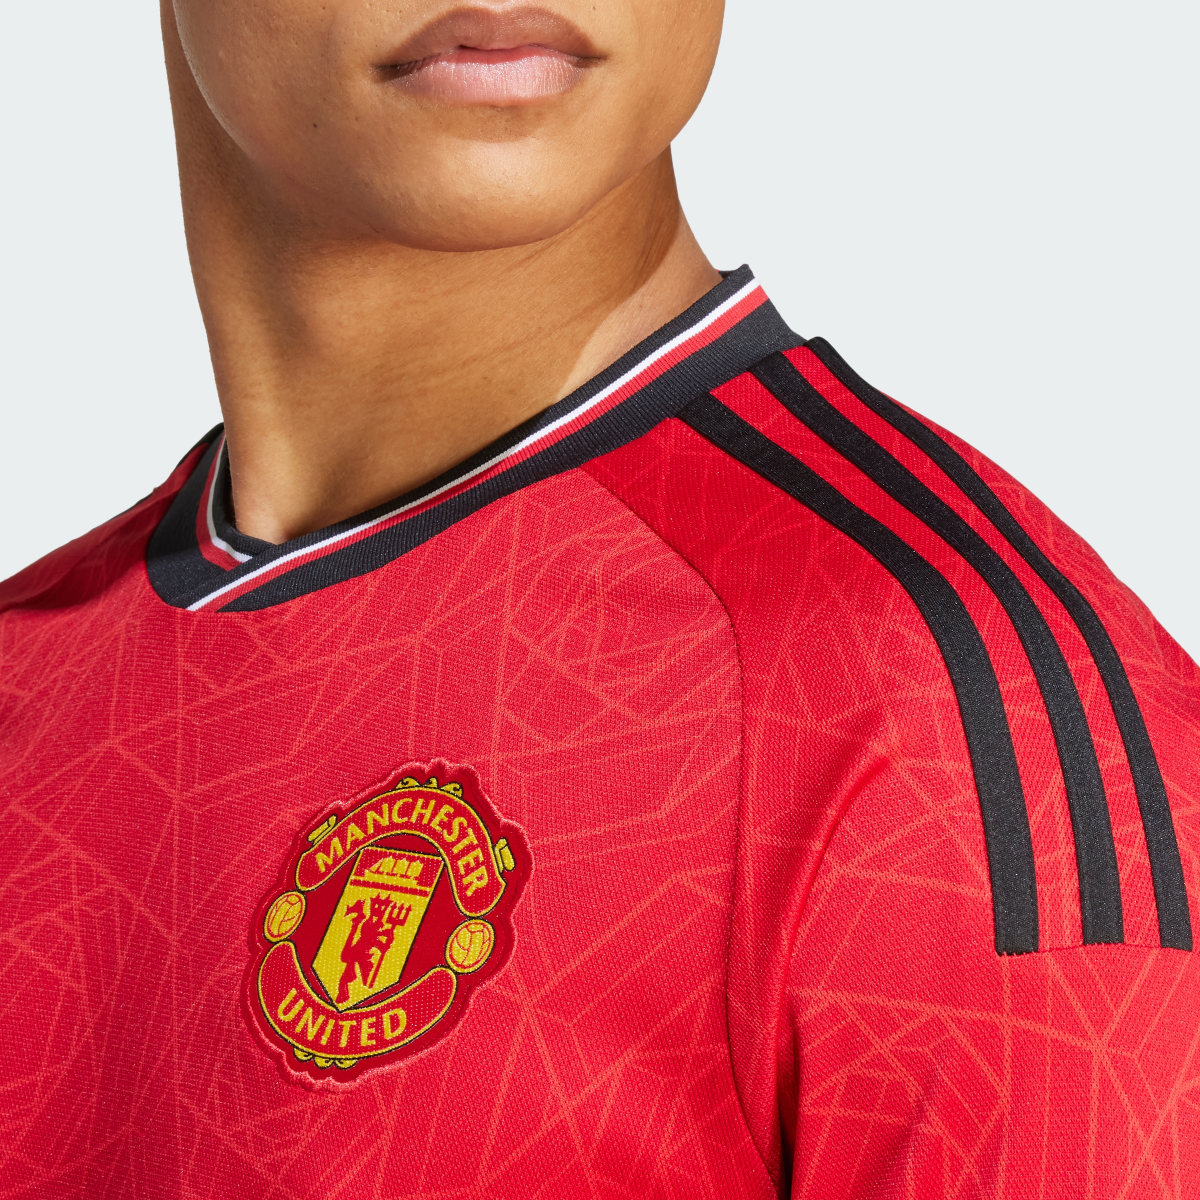 Adidas Camisola Principal de Manga Comprida 23/24 do Manchester United. 7